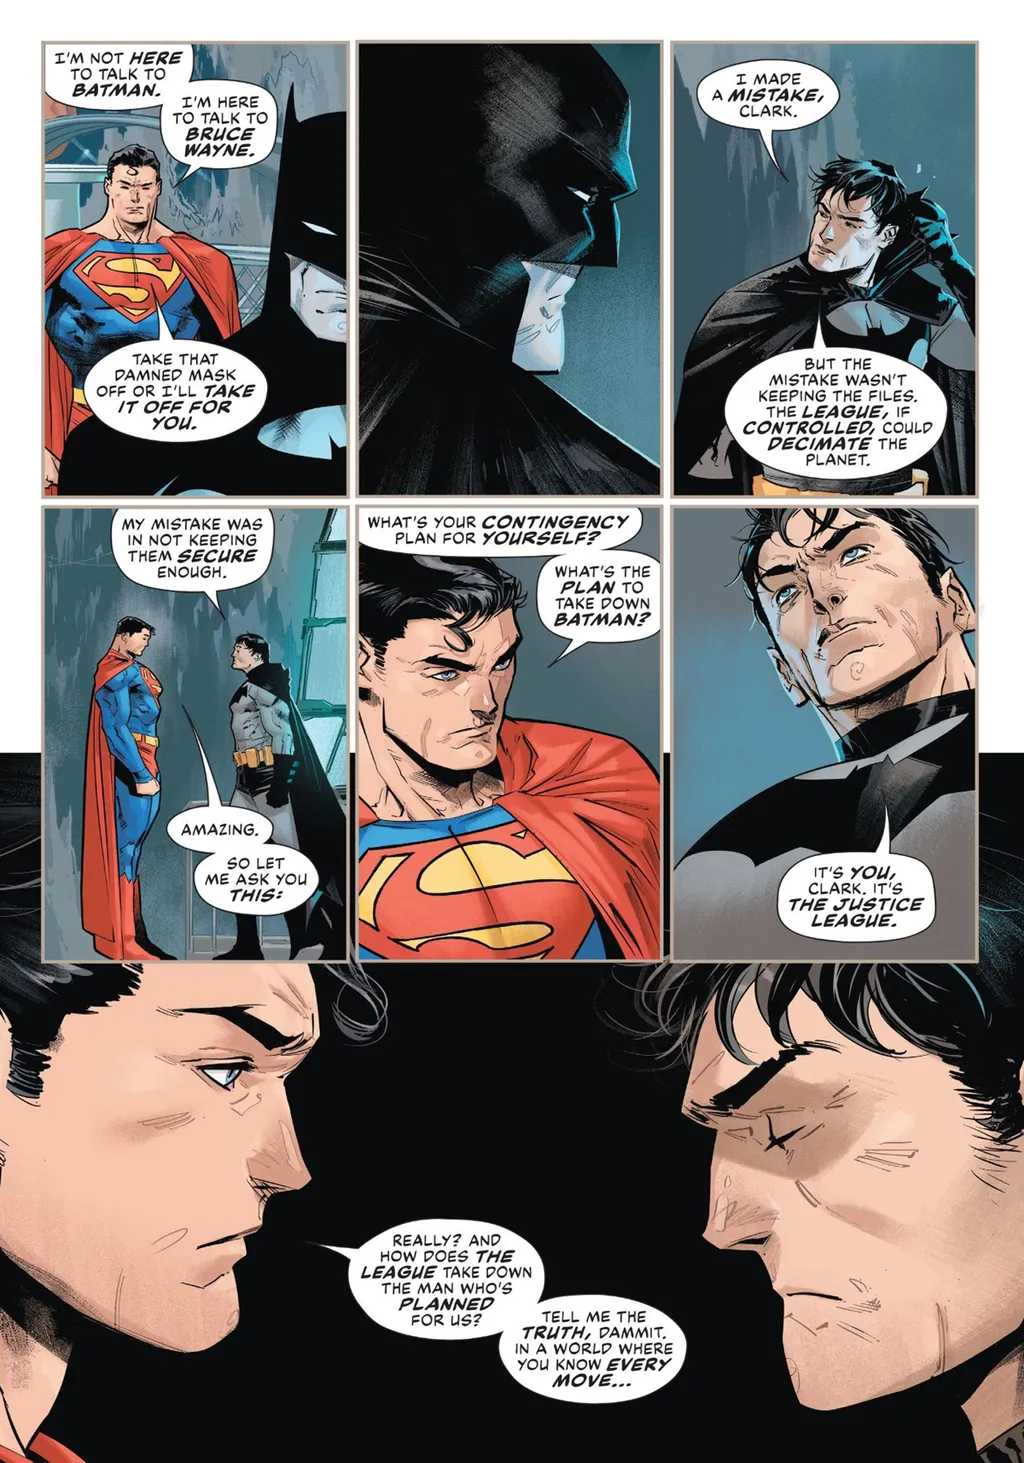 Batman confessa ao Superman que o problema maior for não proteger seus planos de forma eficiente (Imagem: Reprodução/DC Comics)